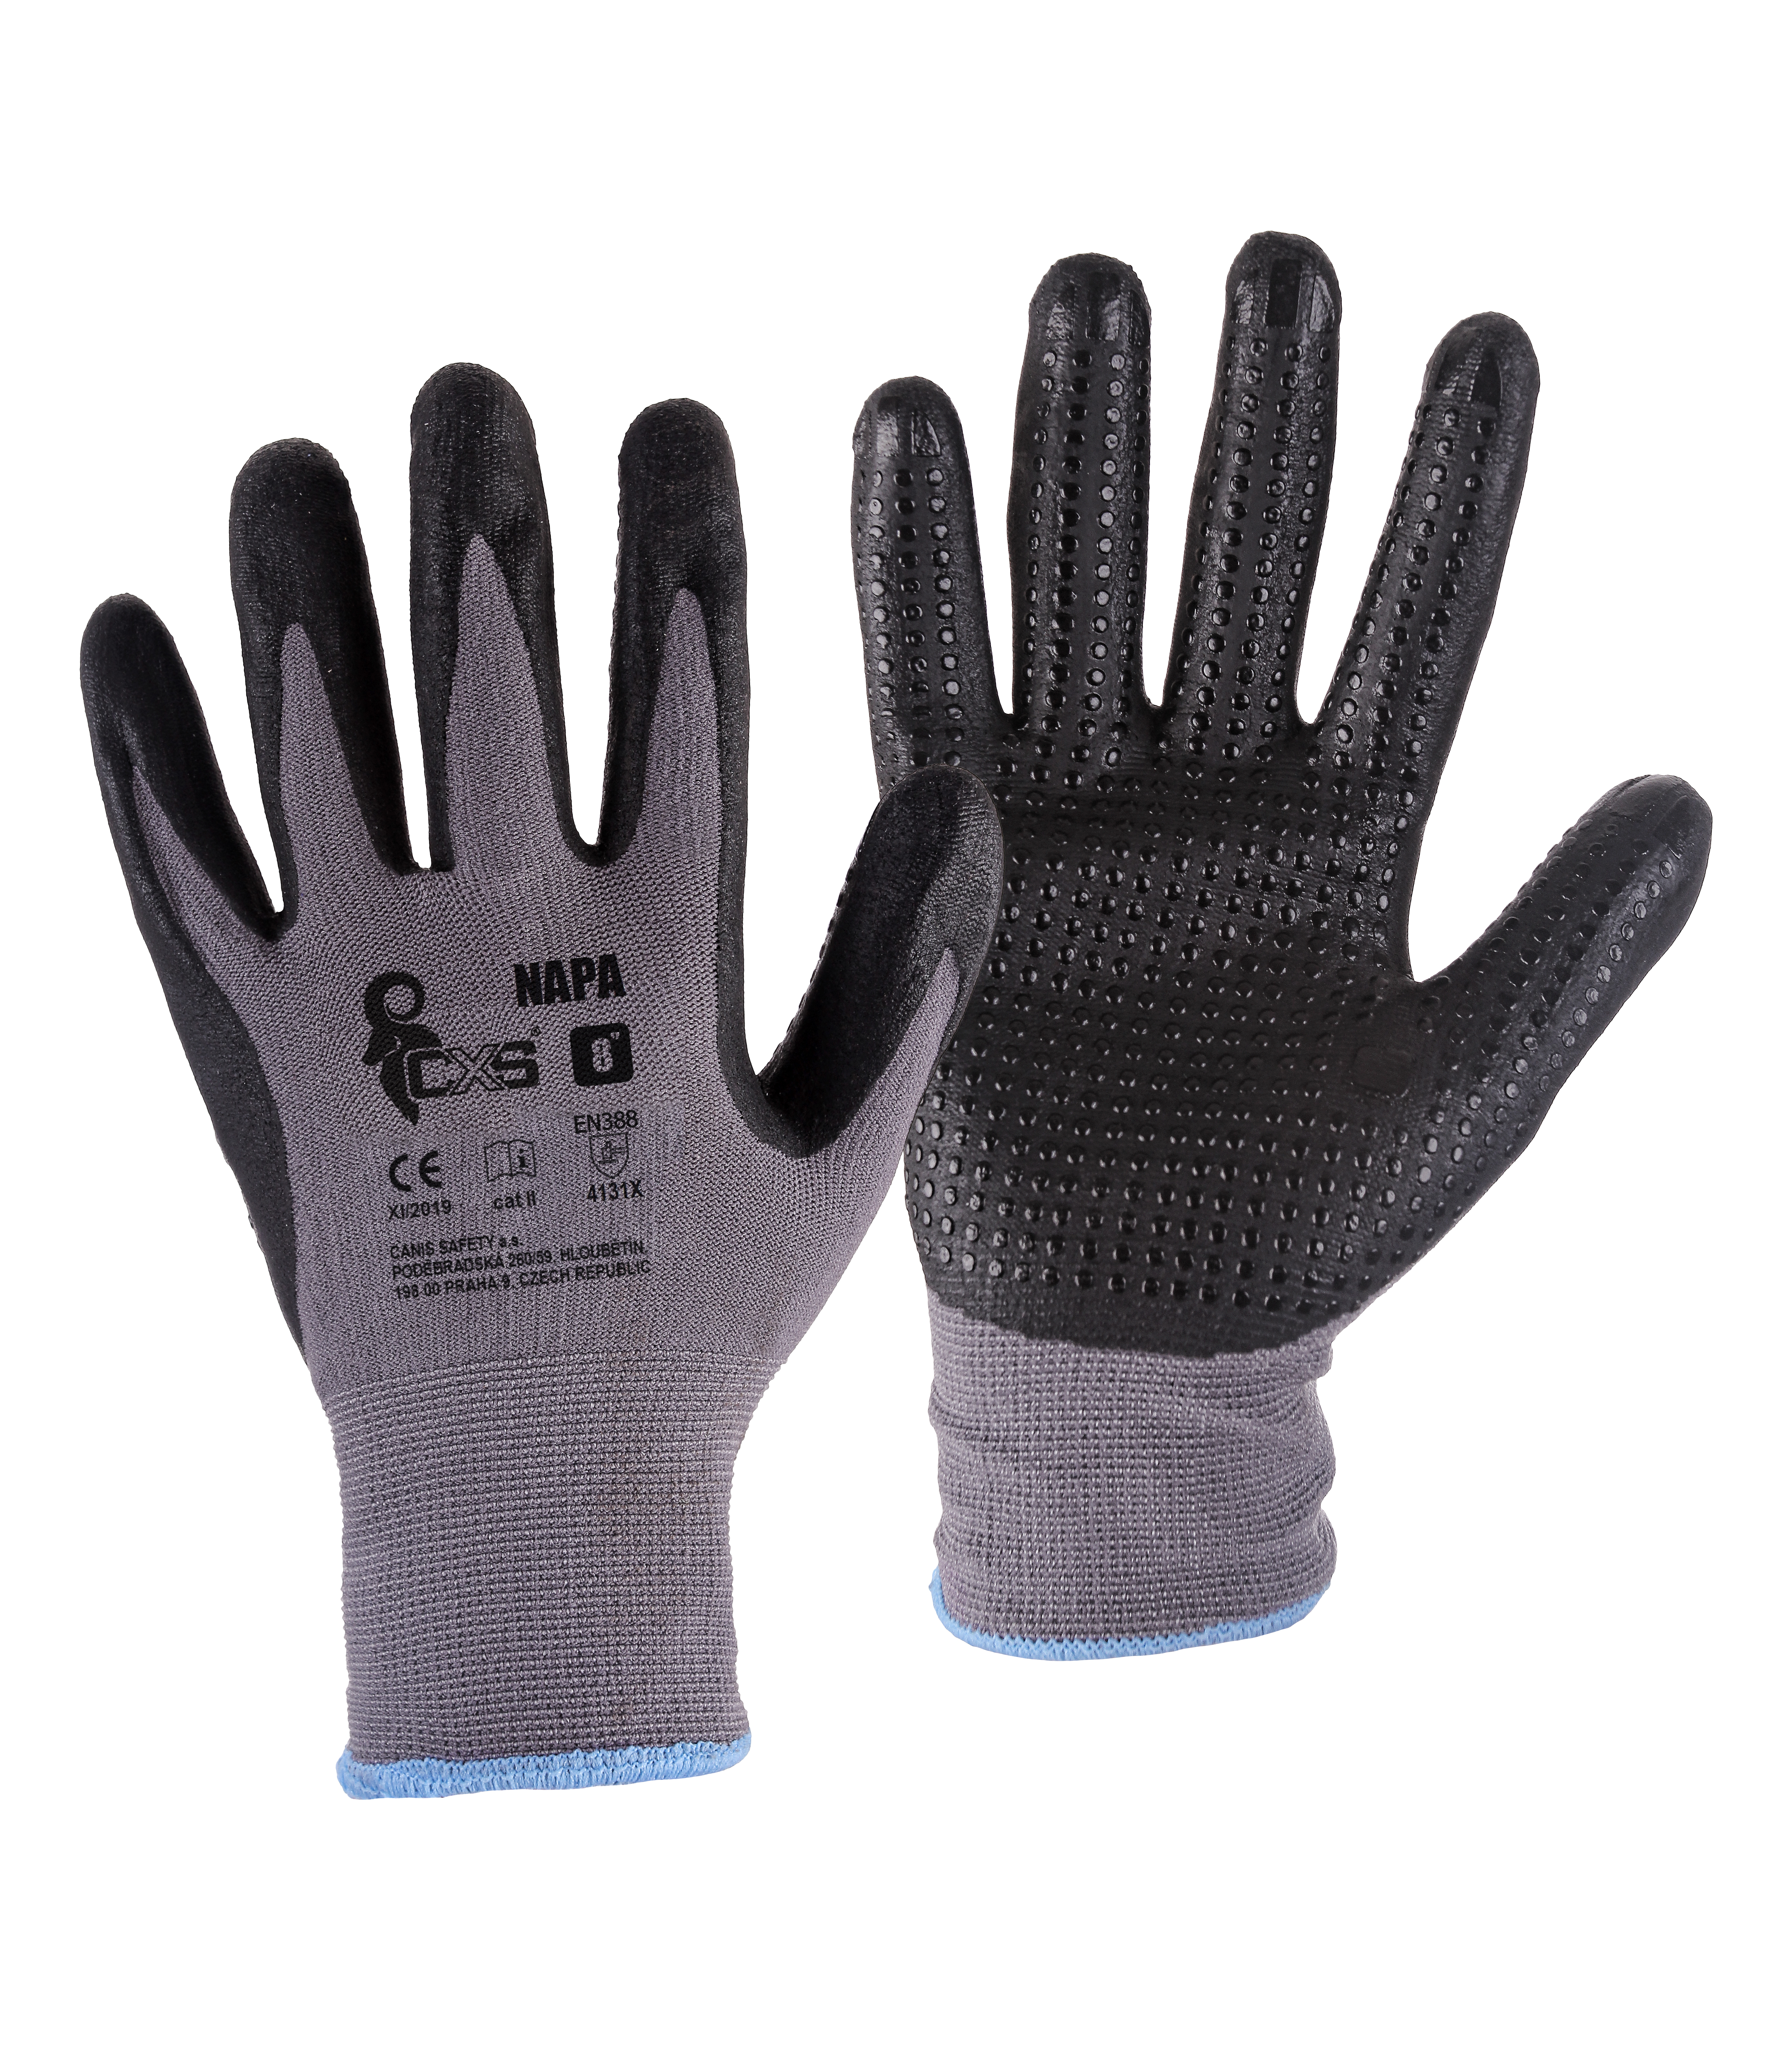 rukavice NAPA, s úpletem, šedo - černé, velikost 8 0.04 Kg TOP Sklad4 606035 60